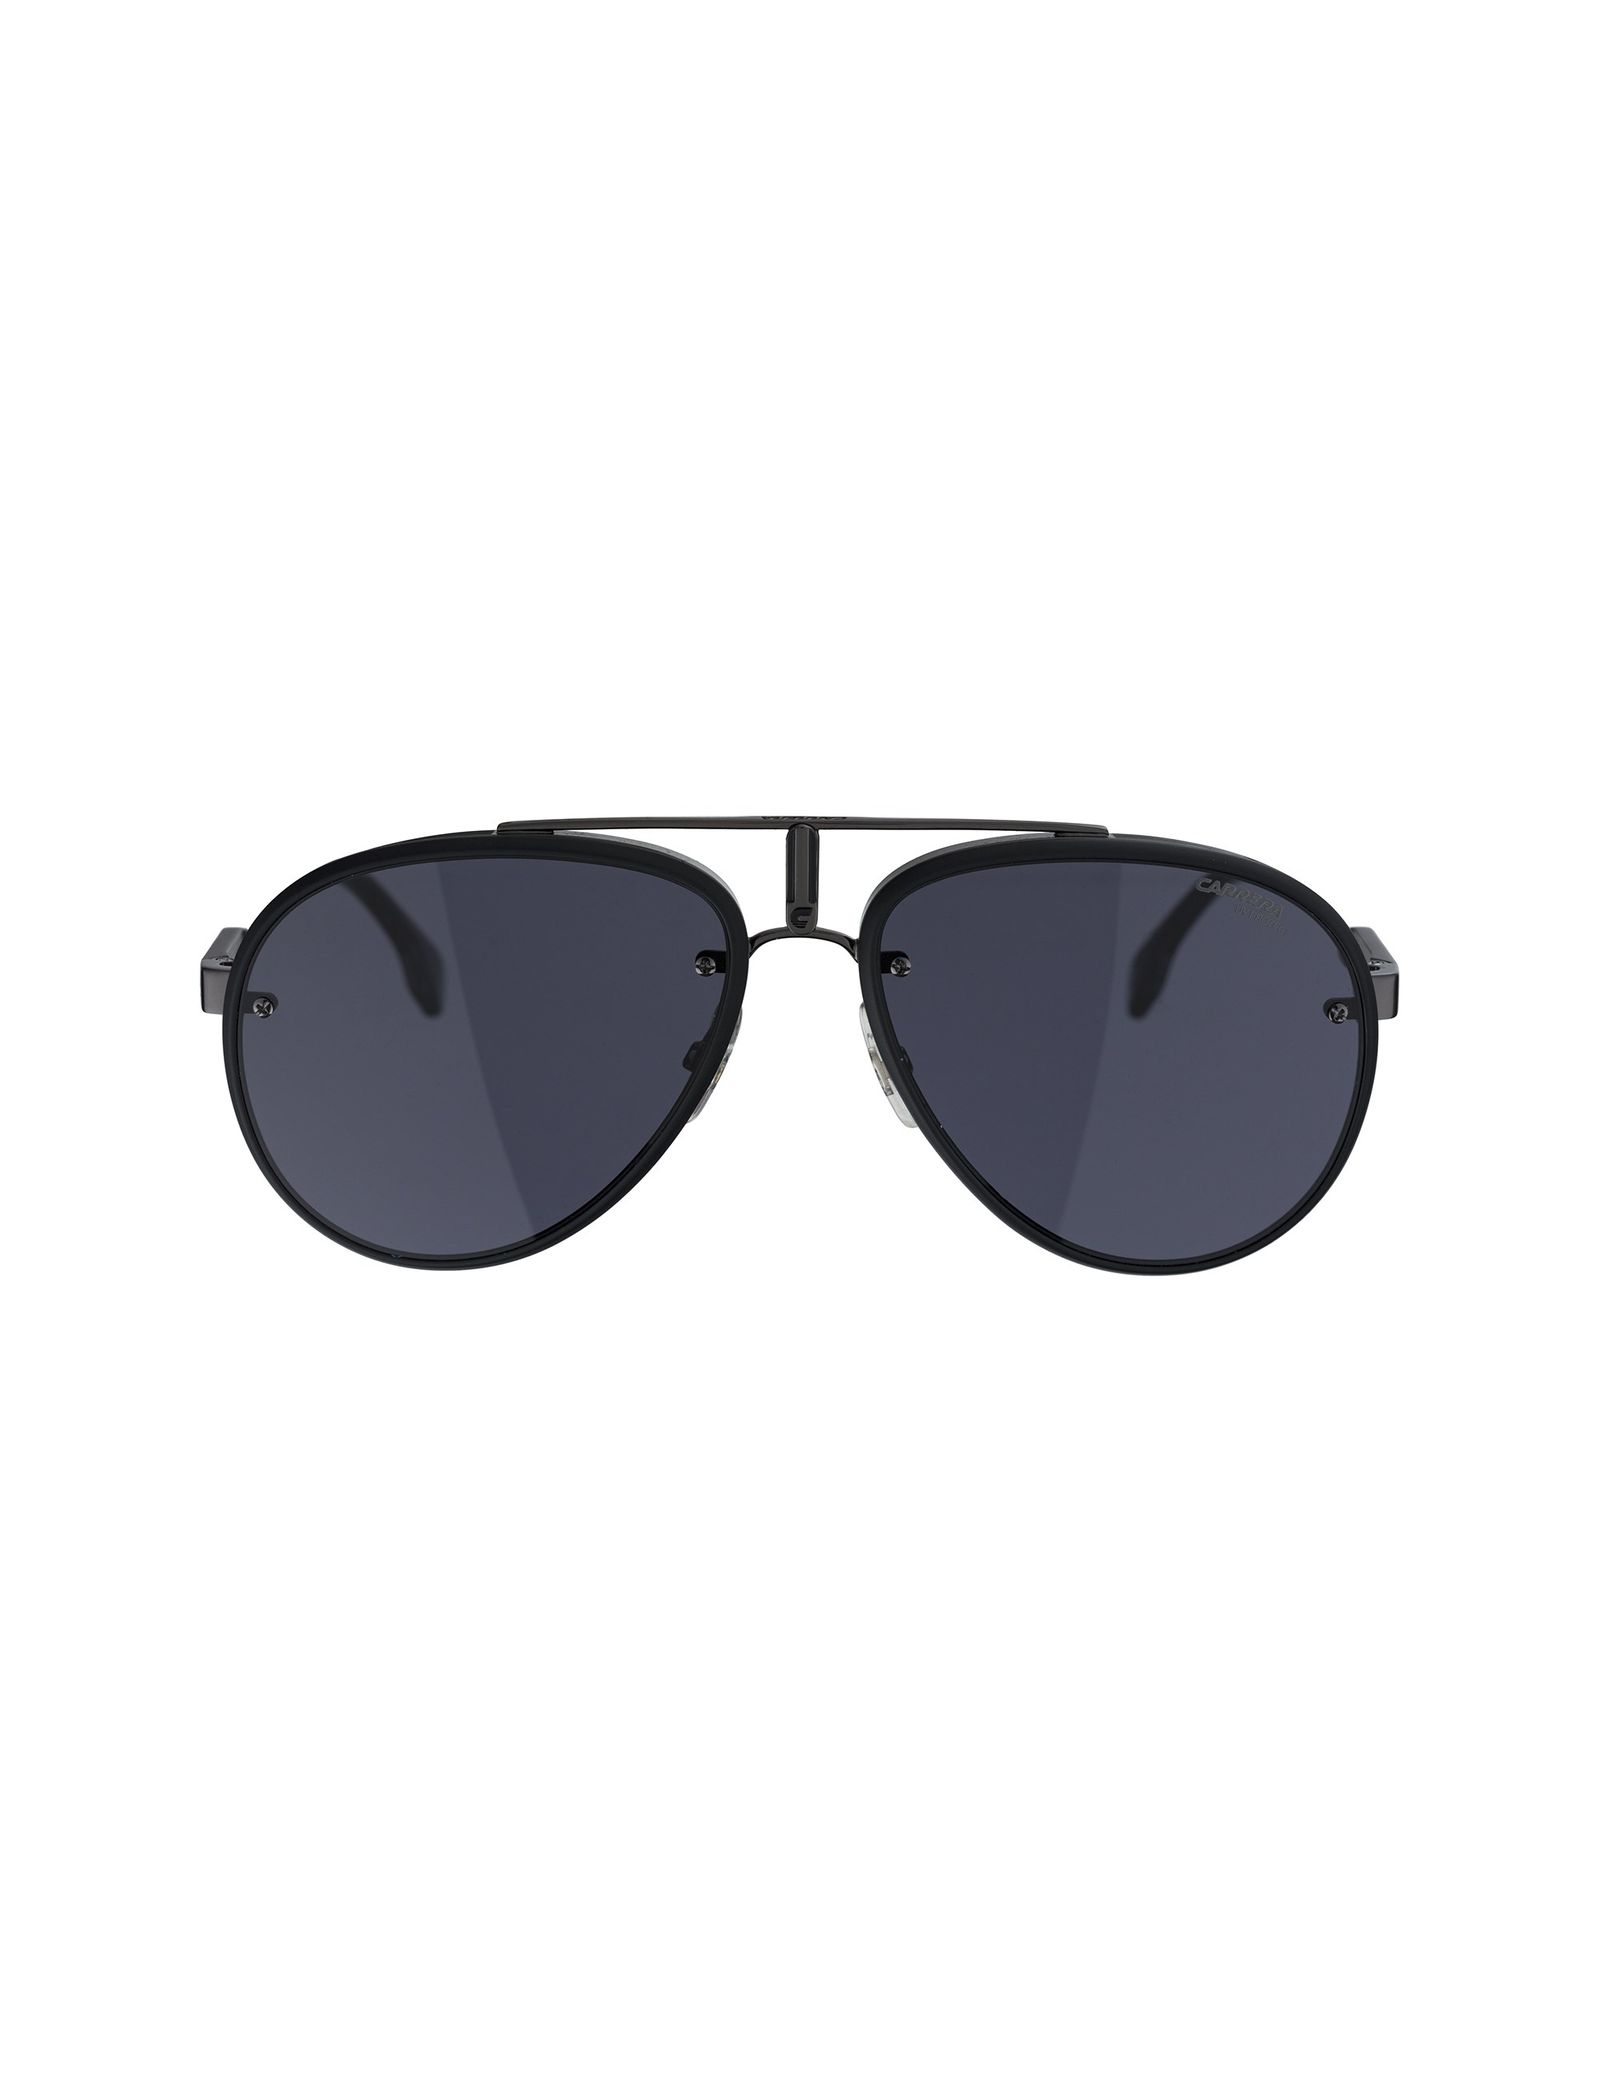 عینک آفتابی خلبانی بزرگسال - کاررا -  - 1